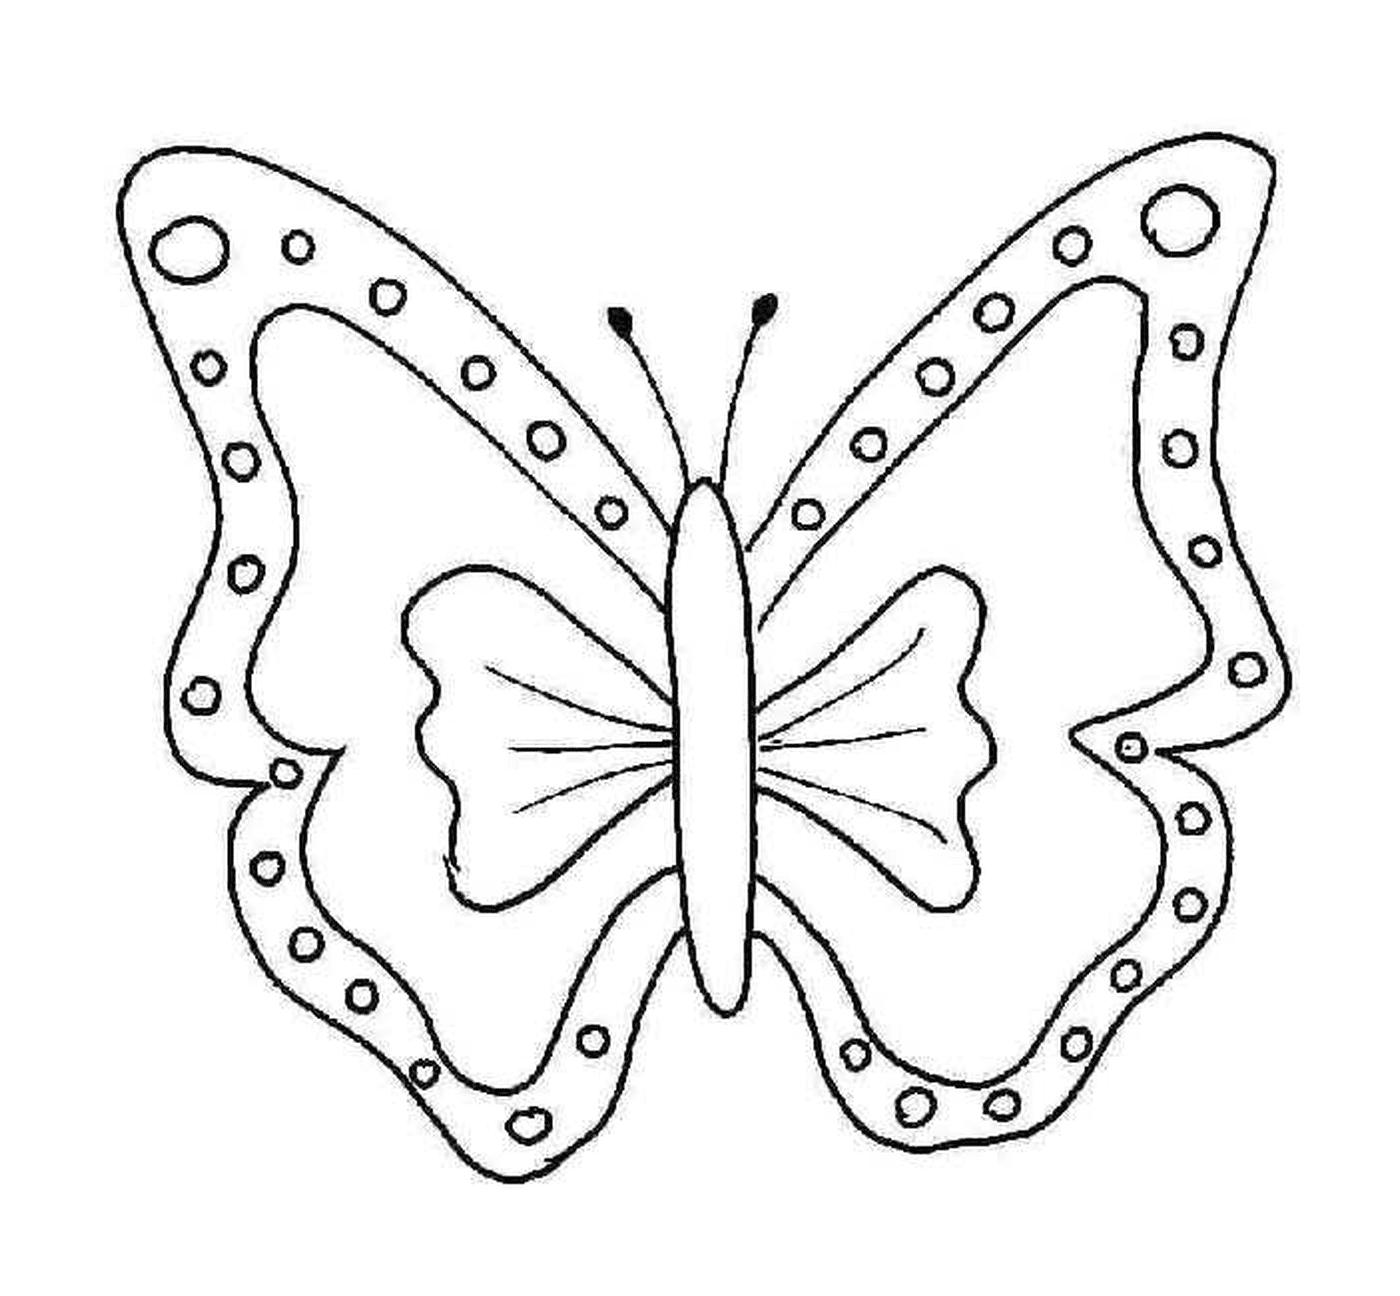  borboleta delicada e cintilante 